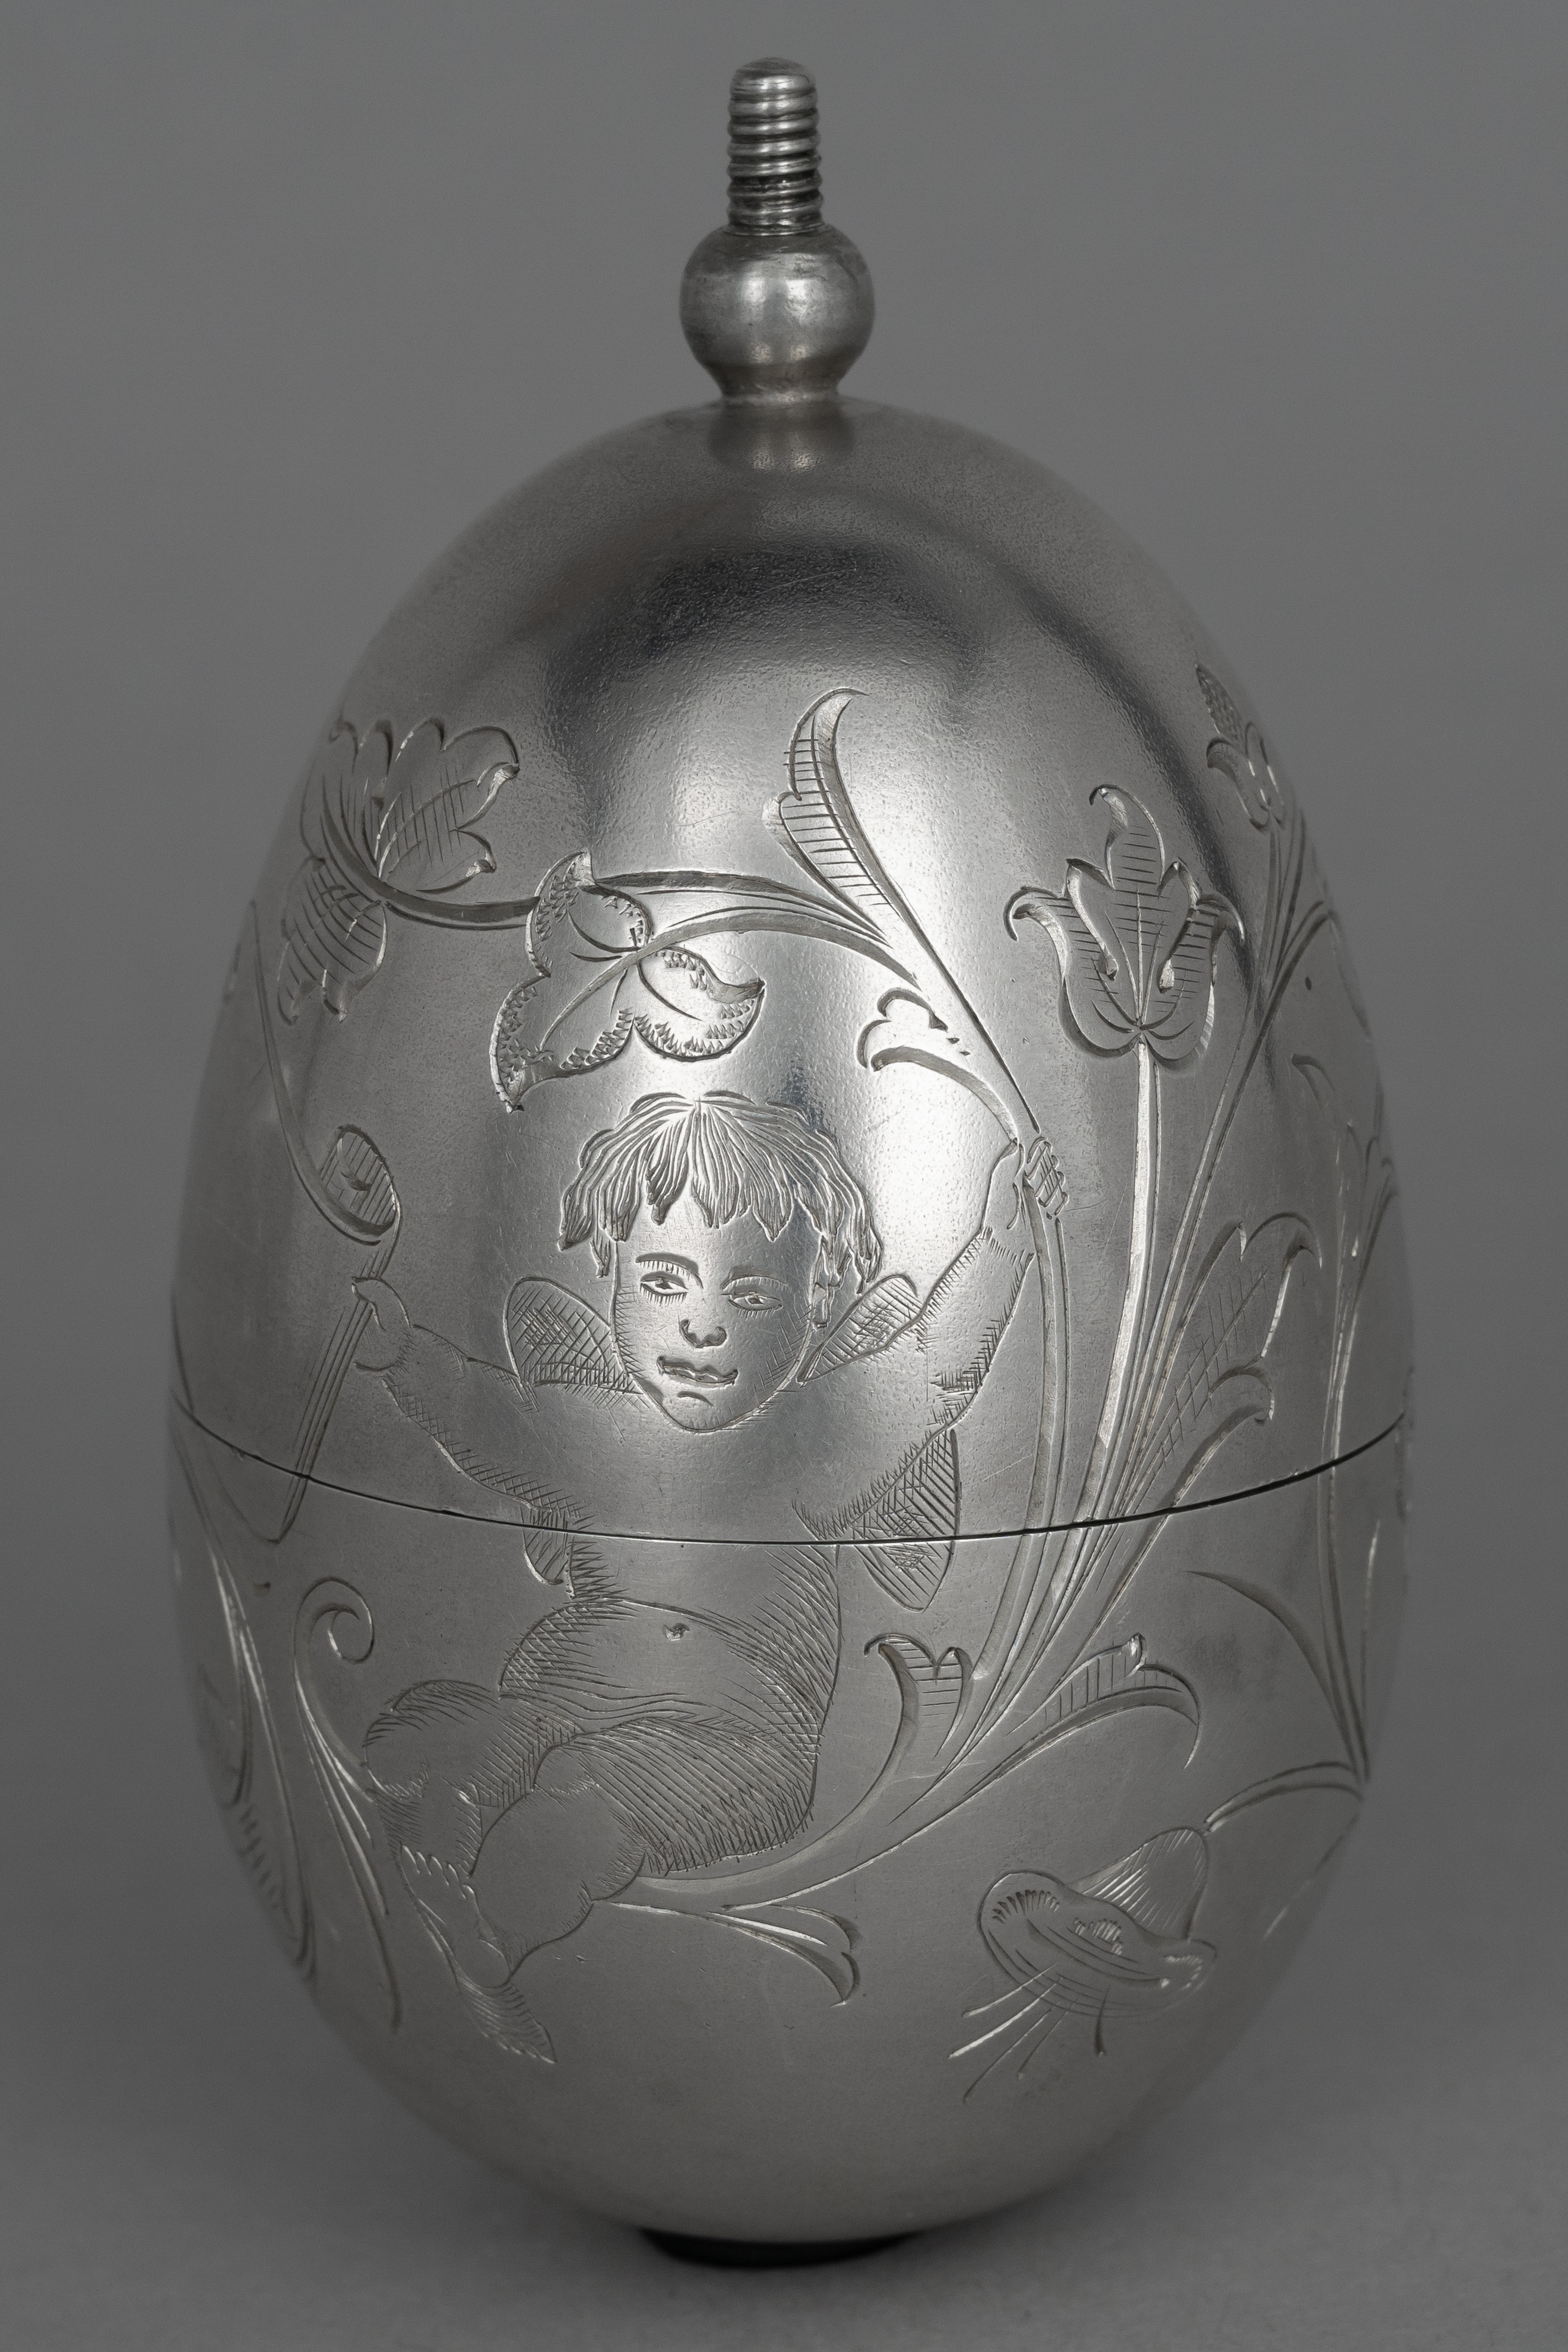 Пасхальное яйцо - трансформер в рюмку.<br>Россия, Санкт-Петербург, мастер «J.A.», 1880-1890 годы.